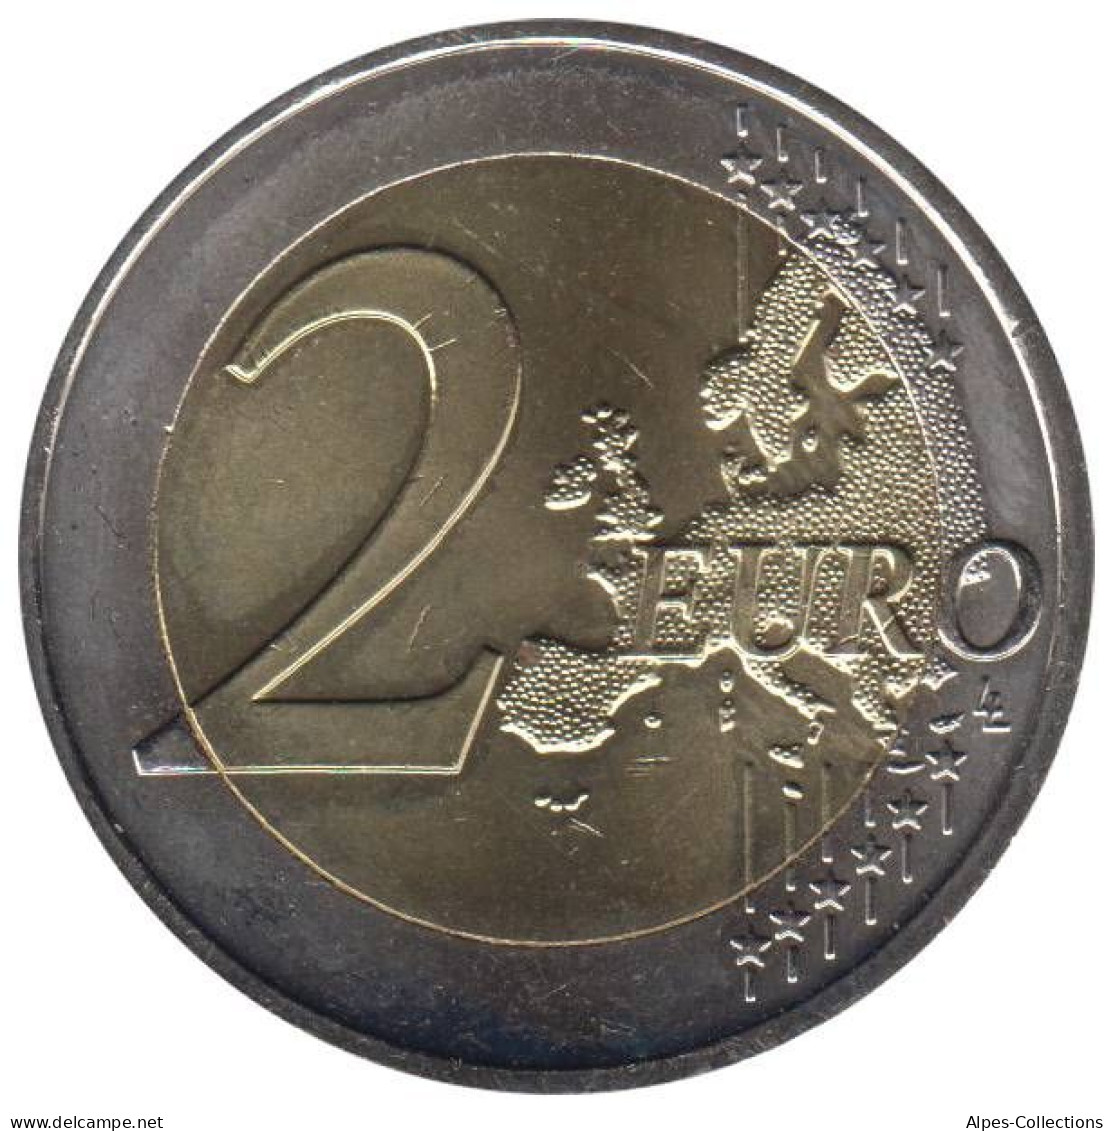 AU20009.1 - AUTRICHE - 2 Euros Commémo. 10 Ans De L'UEM - 2009 - Austria